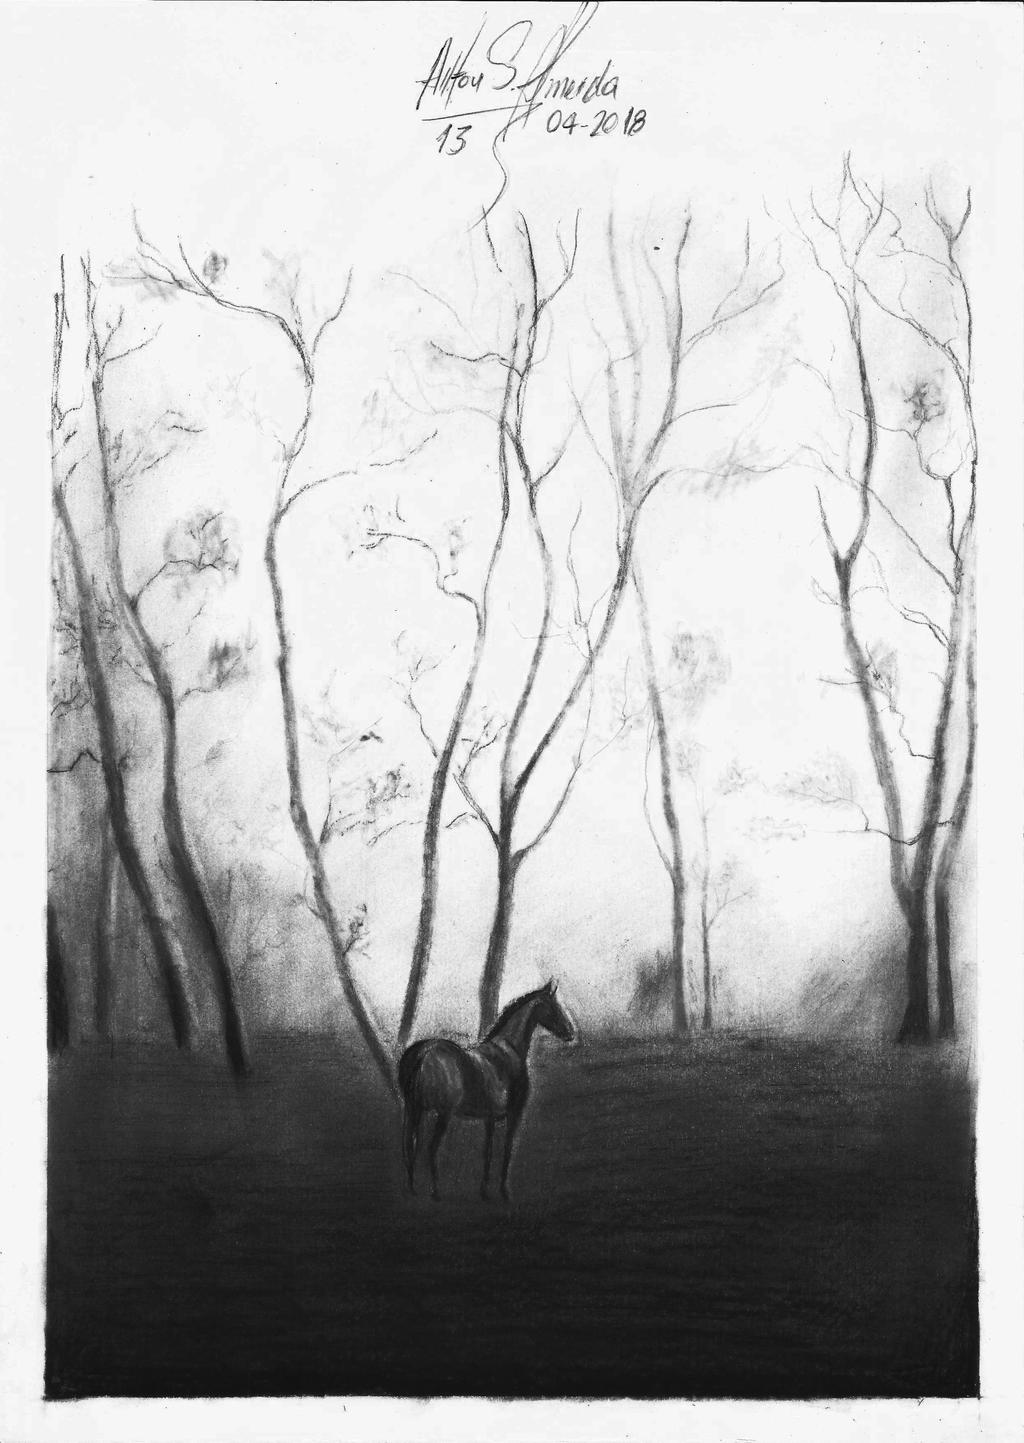 Paisagem e cavalo: desenho a carvo by ailtonalmeidaz on DeviantArt